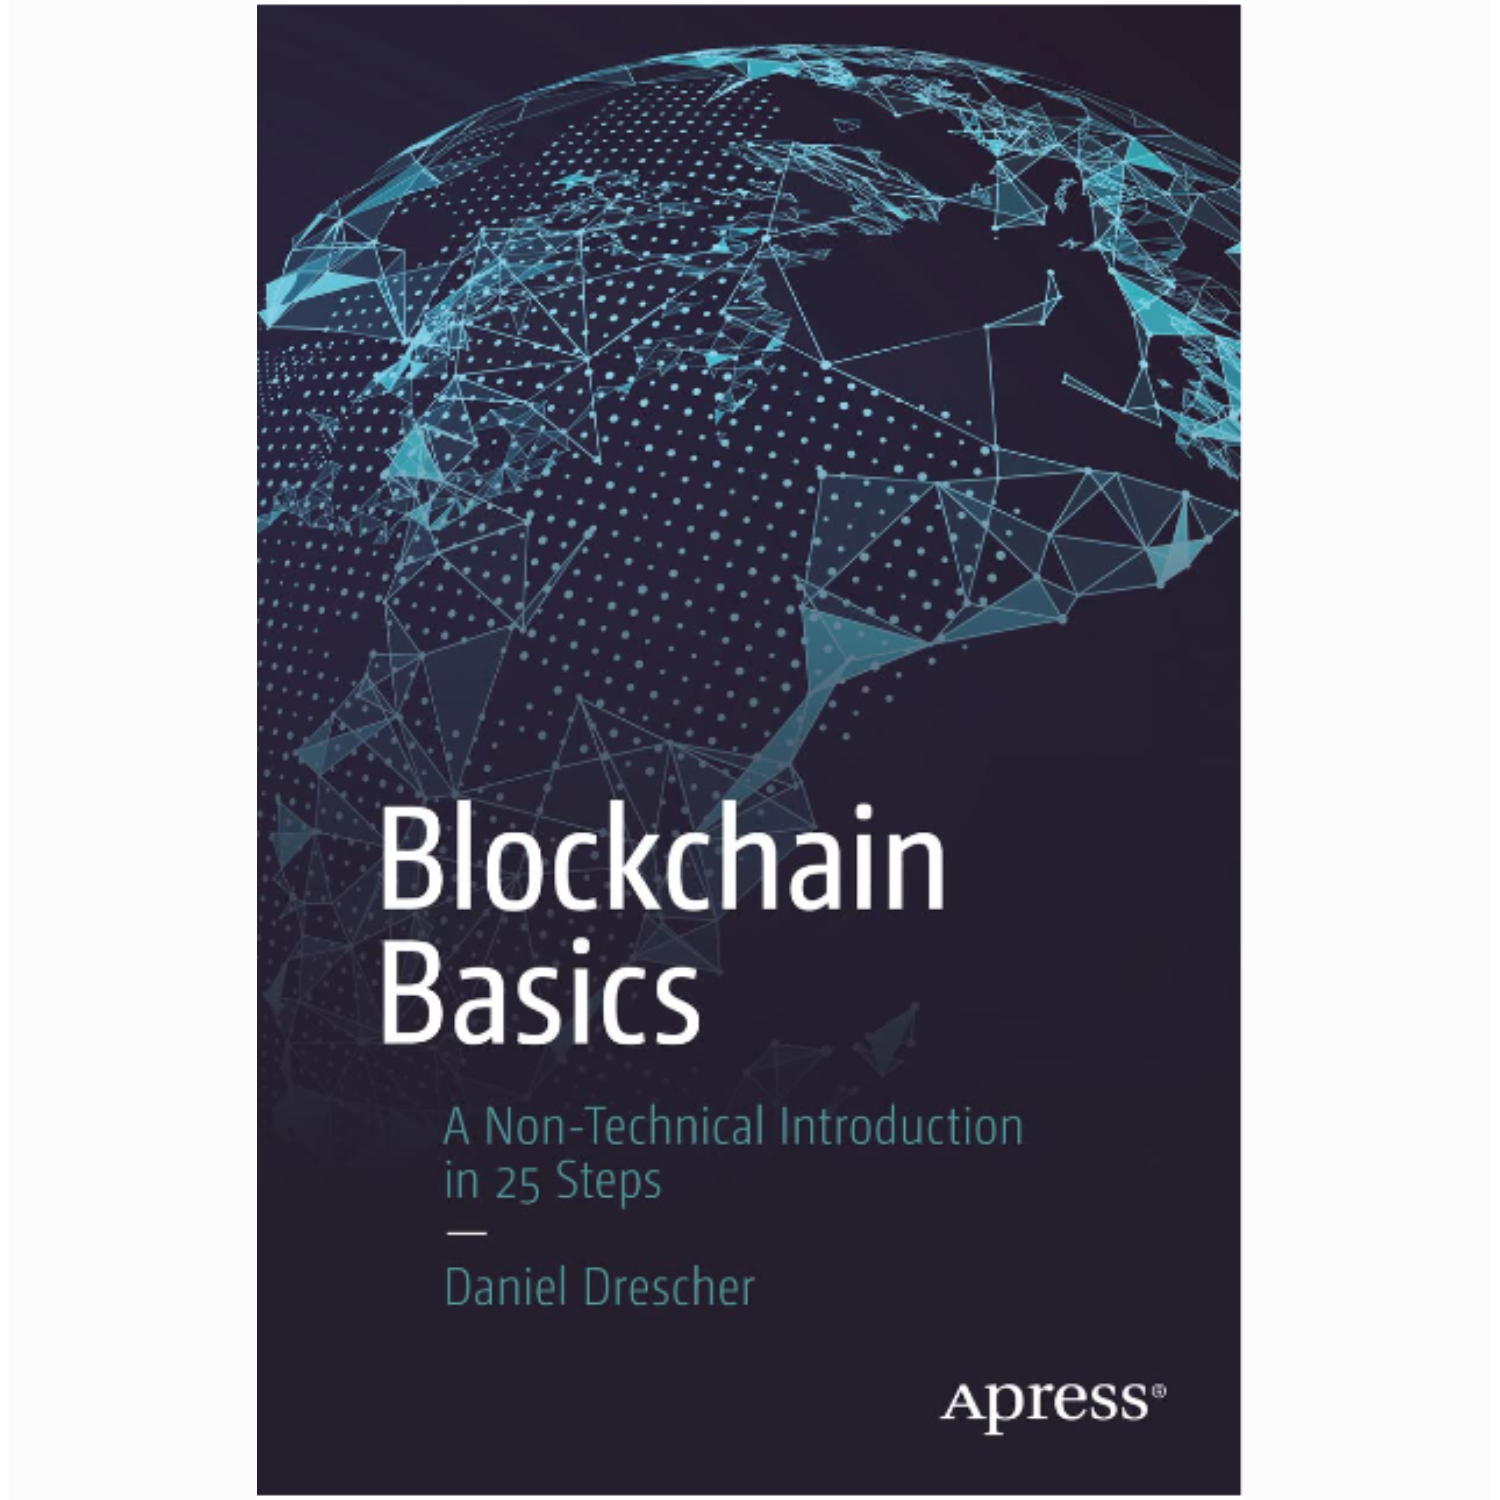 Top 5 cuốn sách về Blockchain